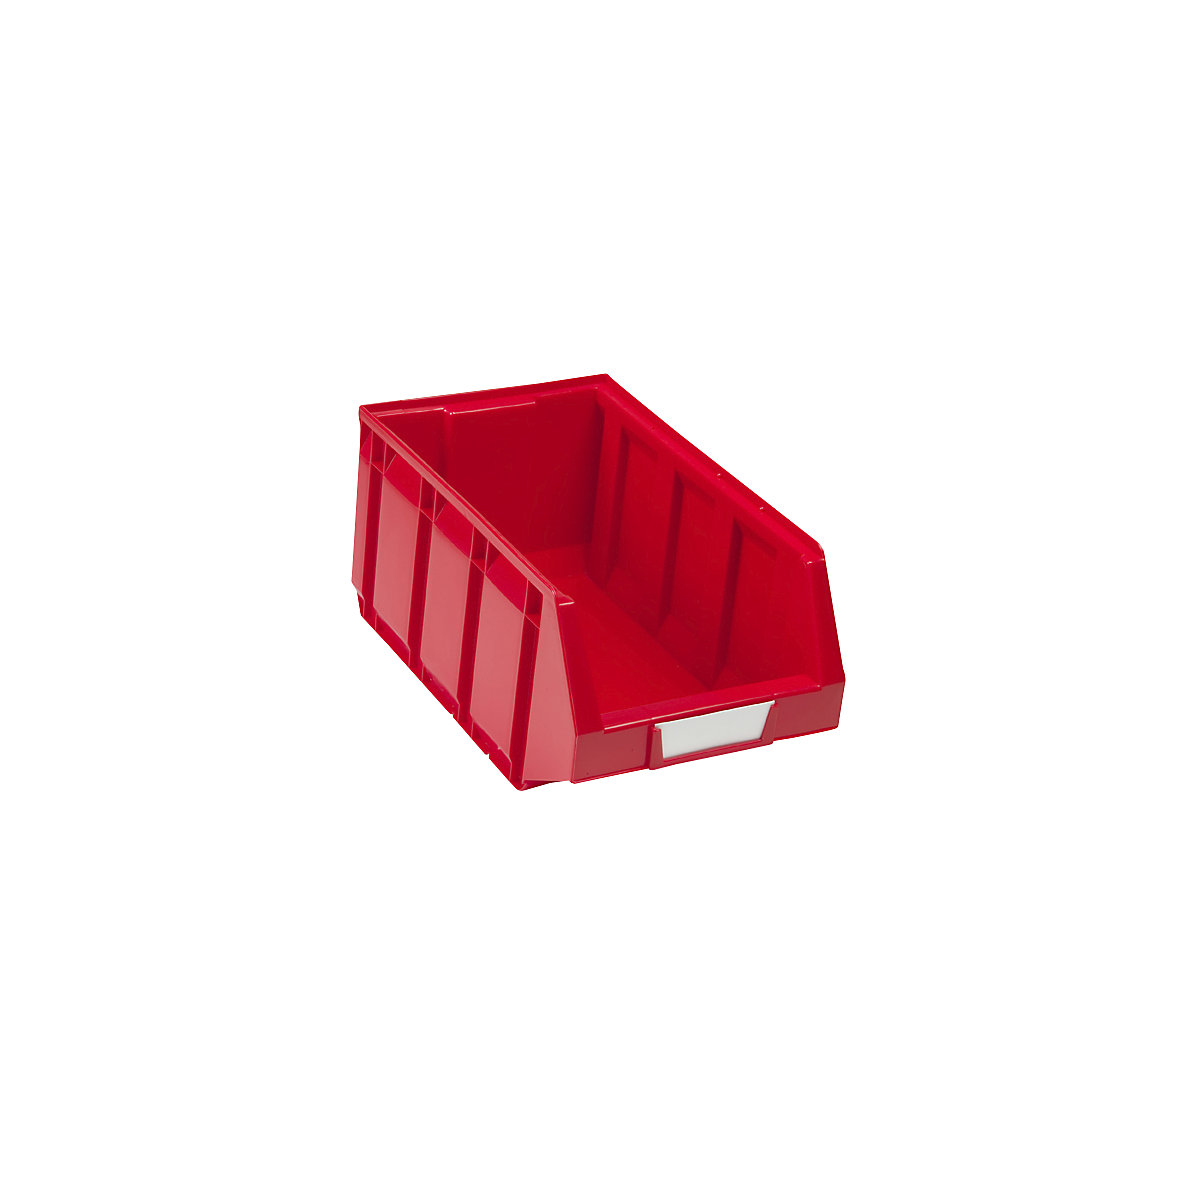 Sichtlagerkasten aus Polyethylen, LxBxH 345 x 205 x 164 mm, rot, VE 24 Stk-10